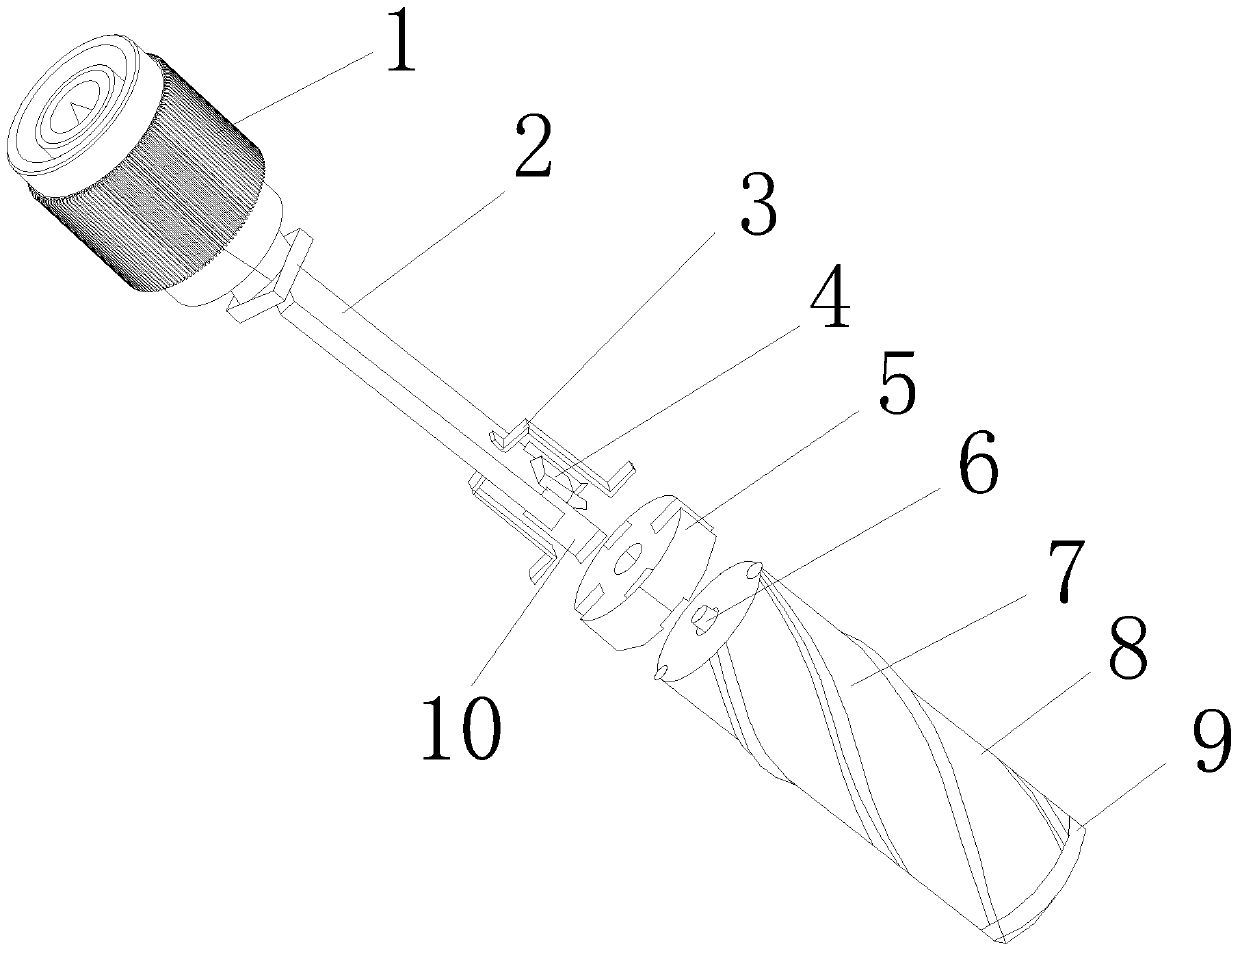 A quadrifilar helical antenna